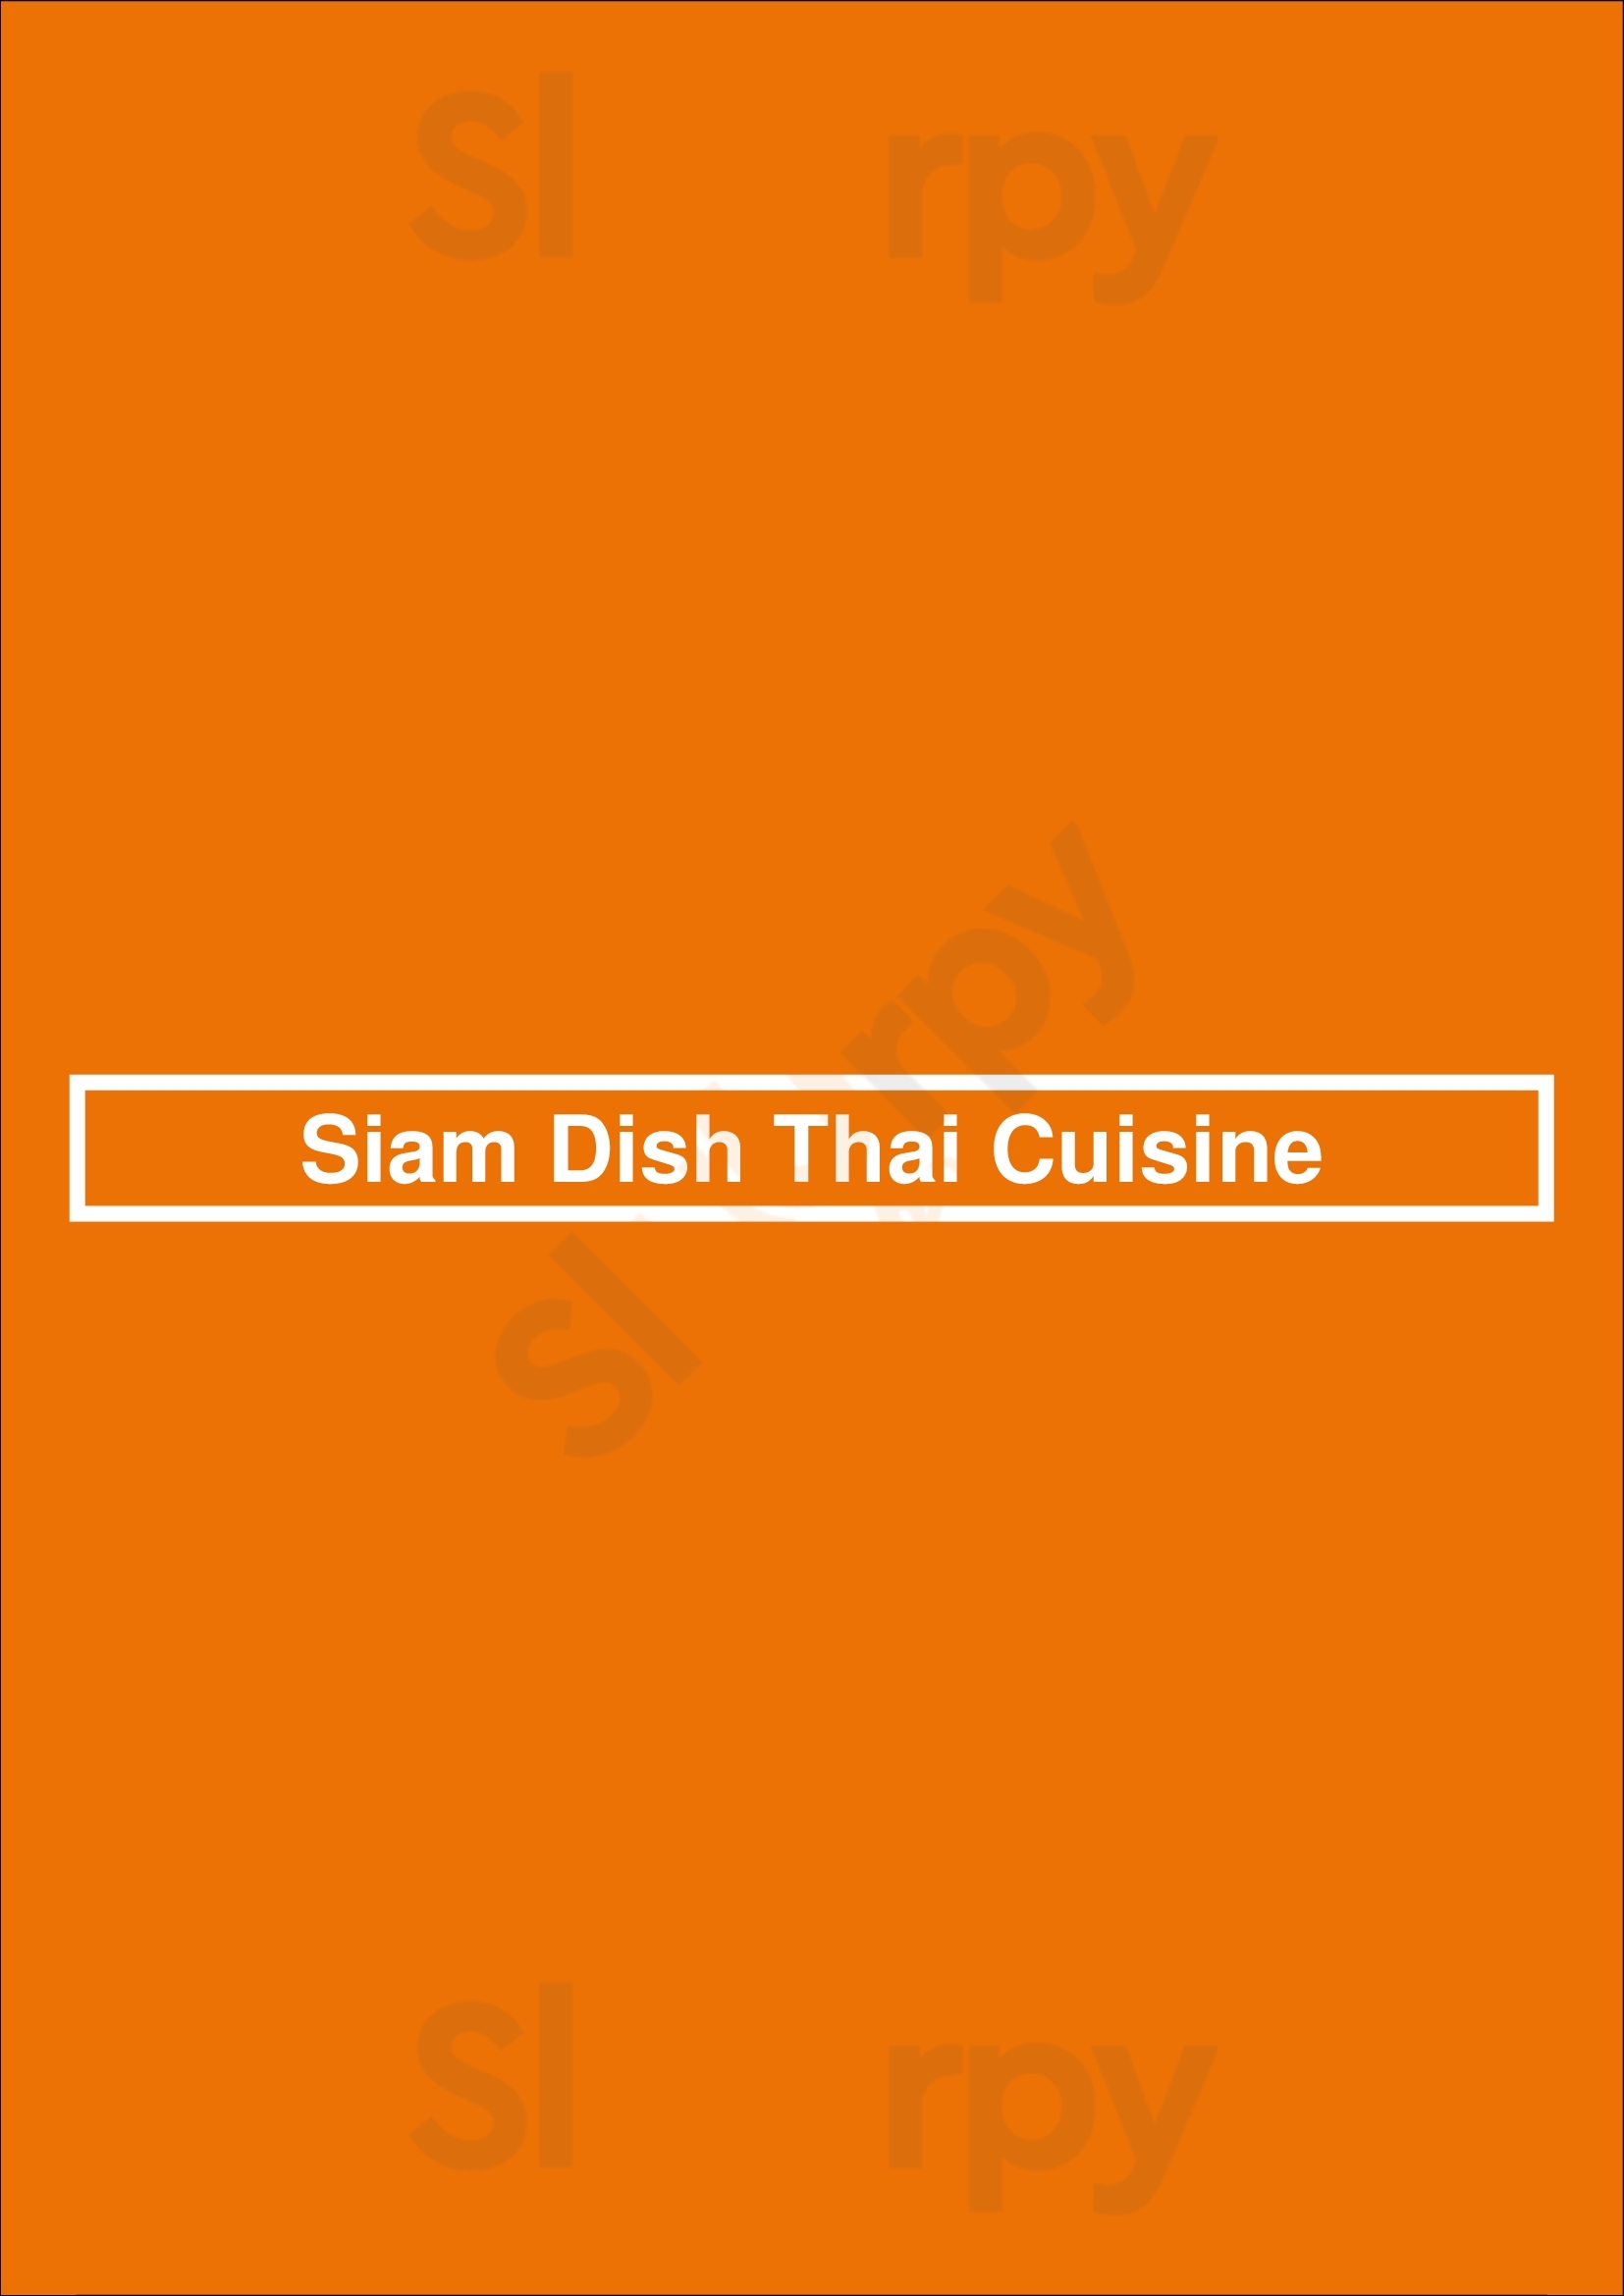 Siam Dish Thai Cuisine Burlington Menu - 1